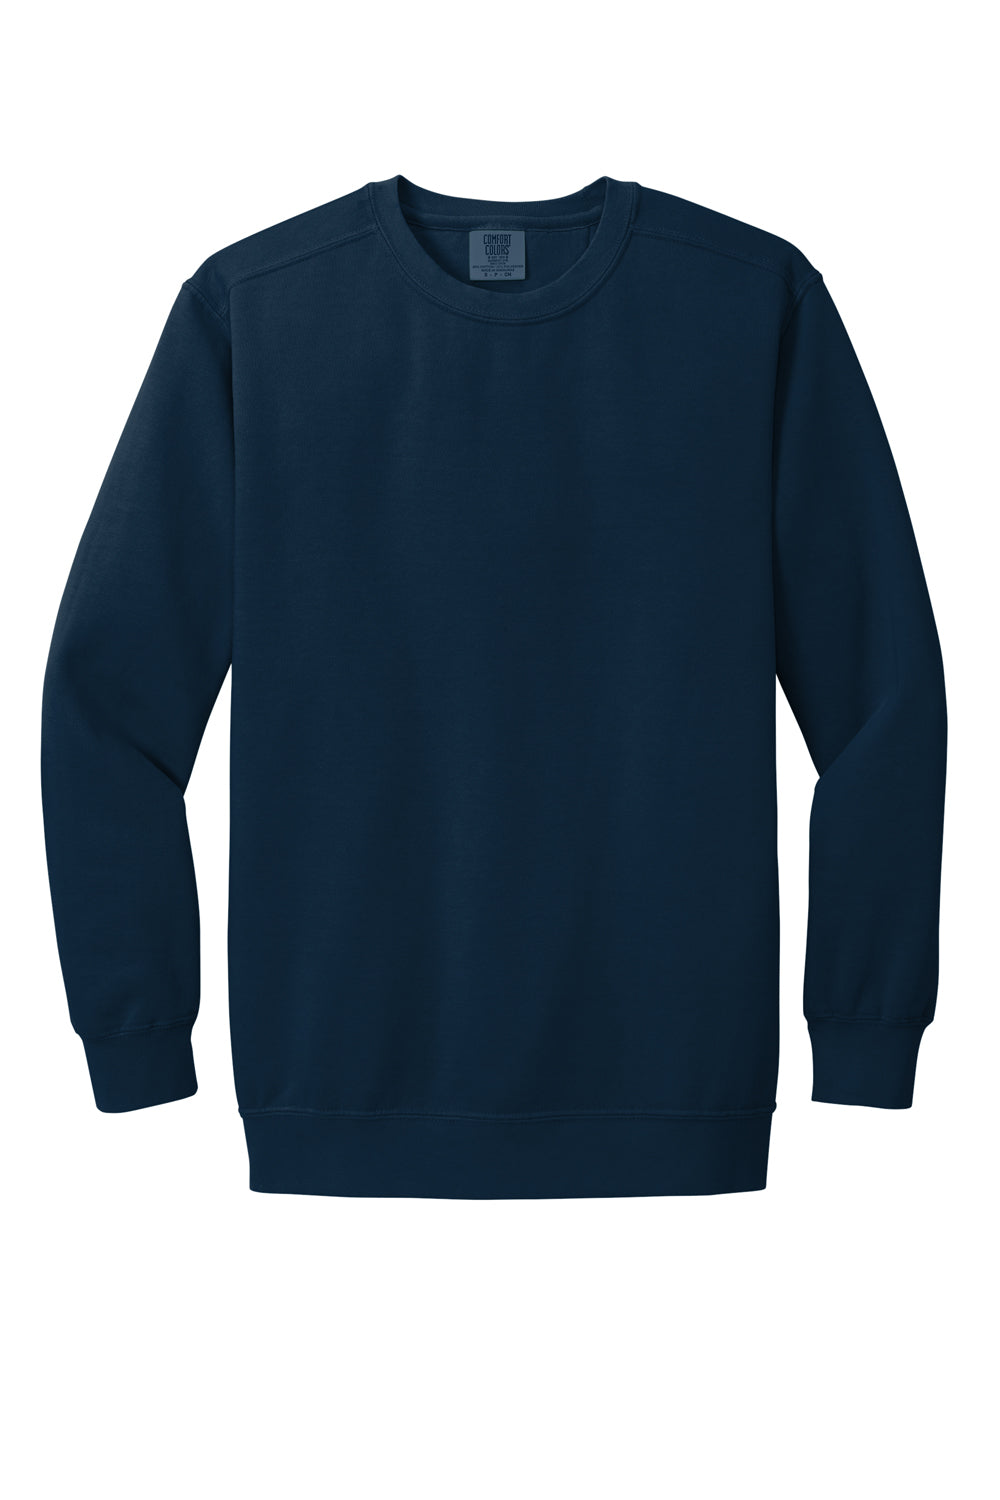 Comfort Colors 1566 Mens Crewneck Sweatshirt True Navy Blue Flat Front